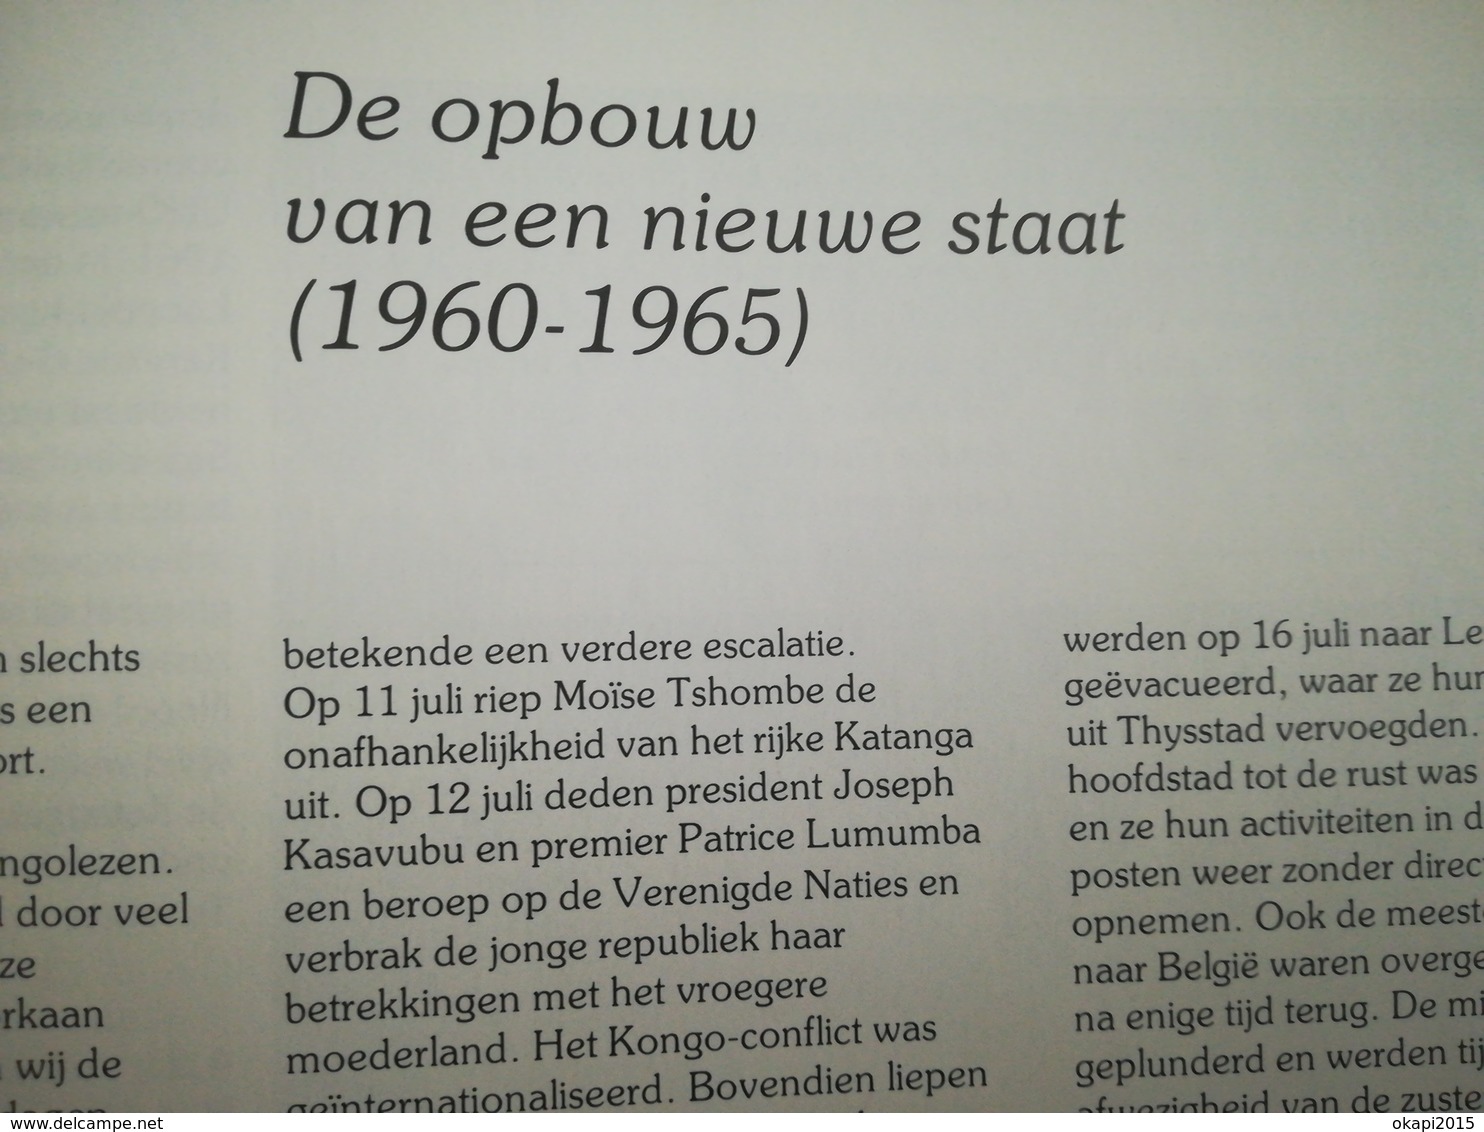 100 JAAR ZUSTERS VAN LIEFDE J. M. IN ZAÏRE 1891 - 1991 boek geschiedenis régionalisme Congo Kolonie België Belgique